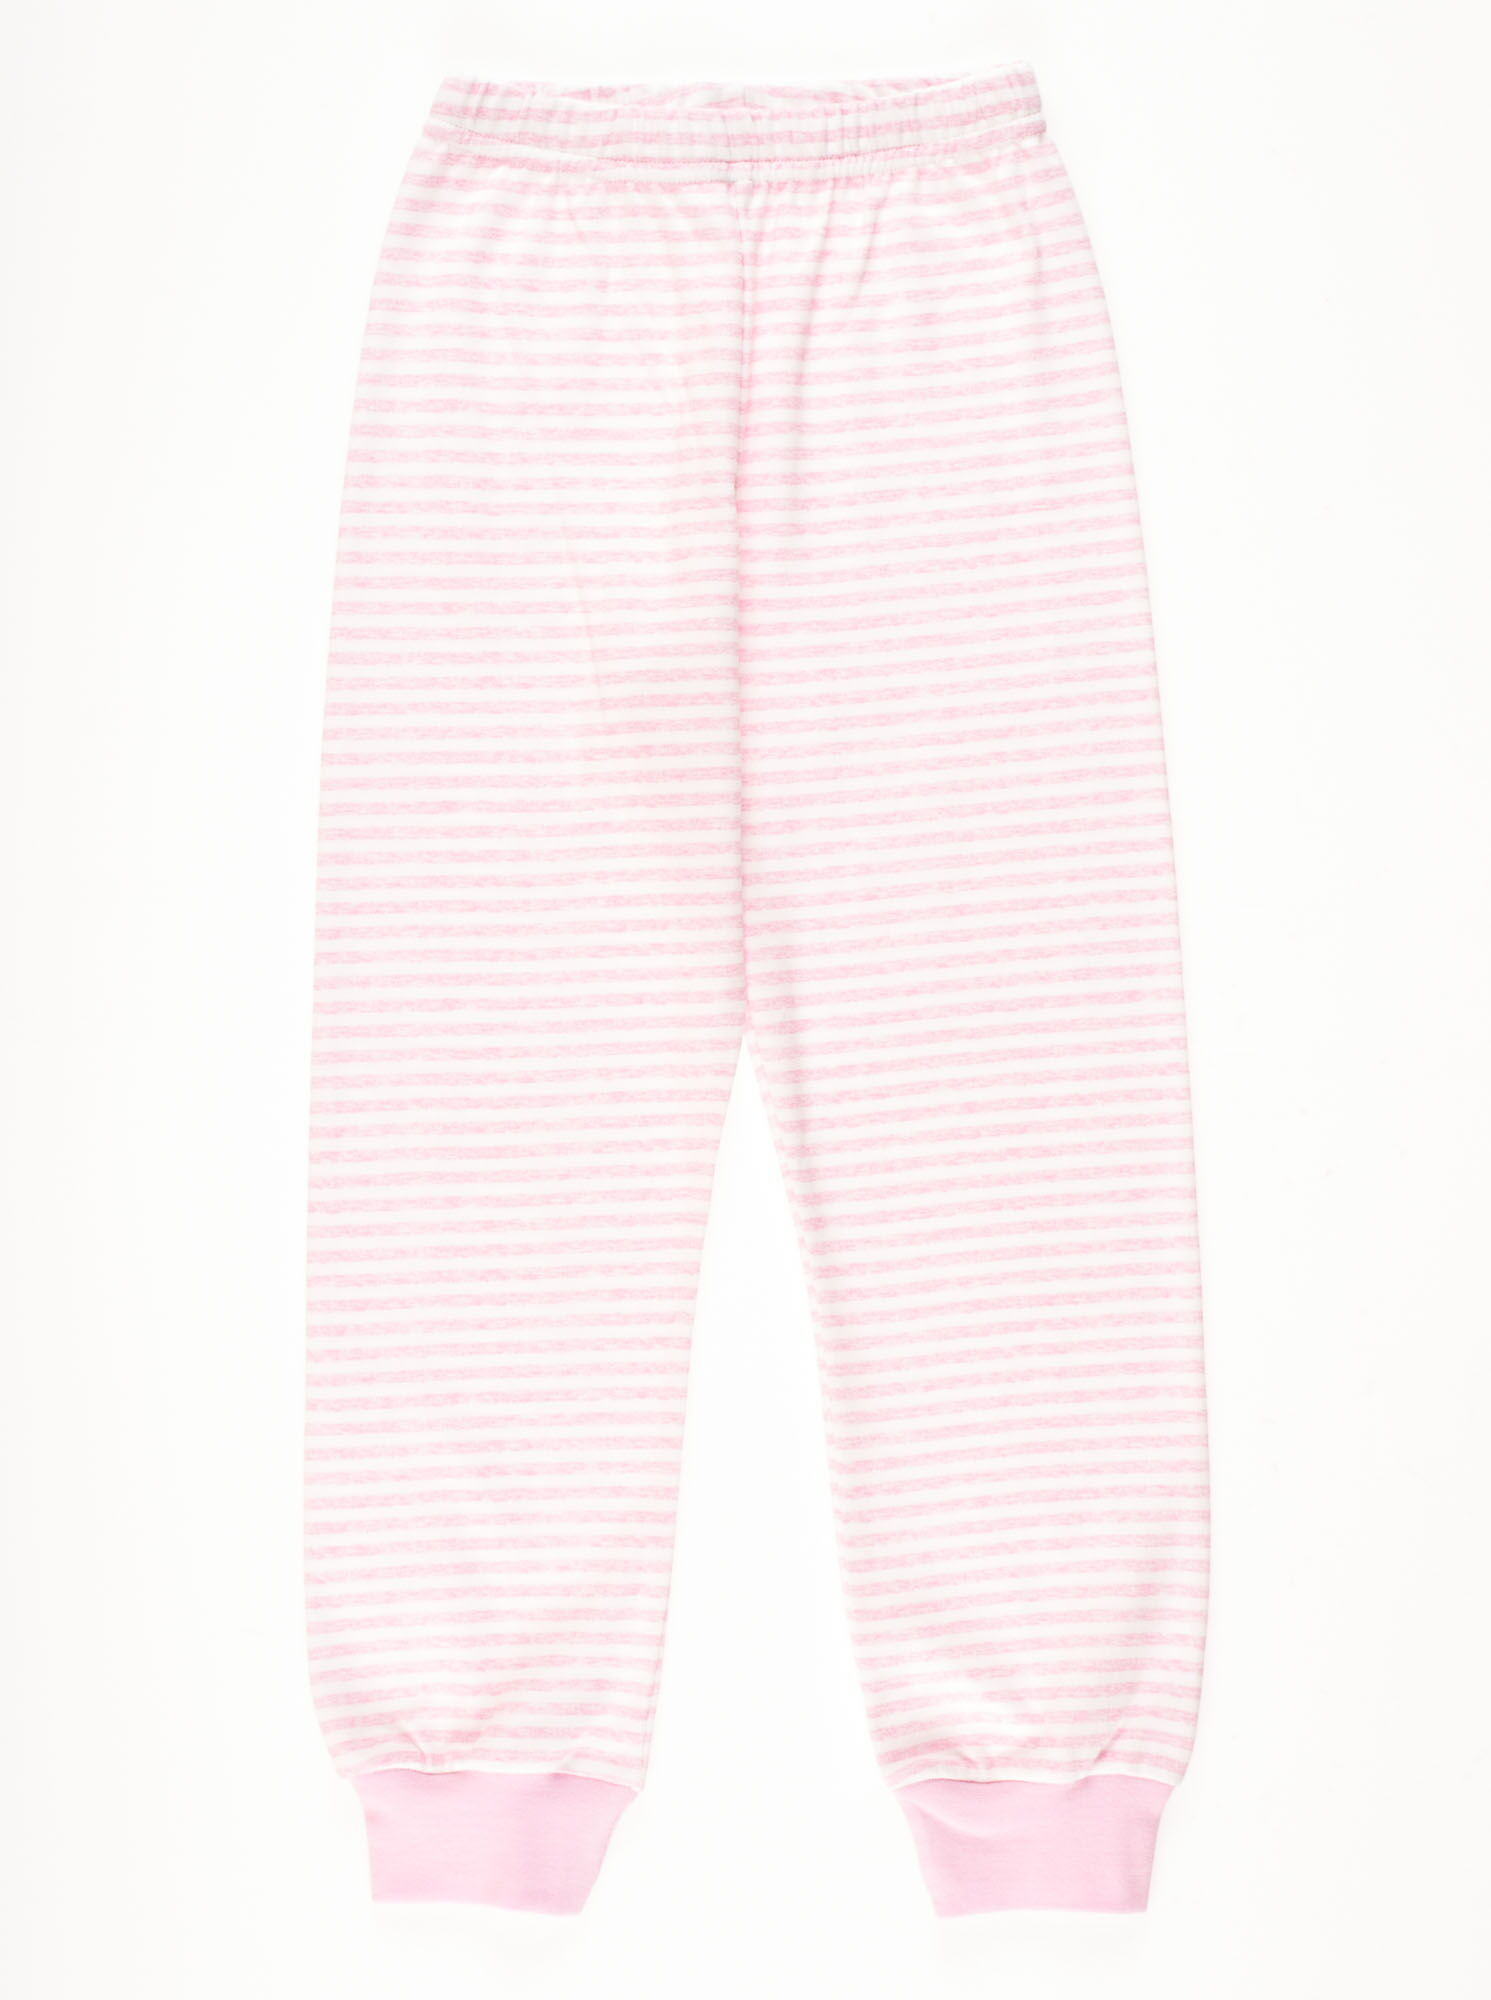 Пижама для девочки Interkids Горох розовая 1694 - размеры